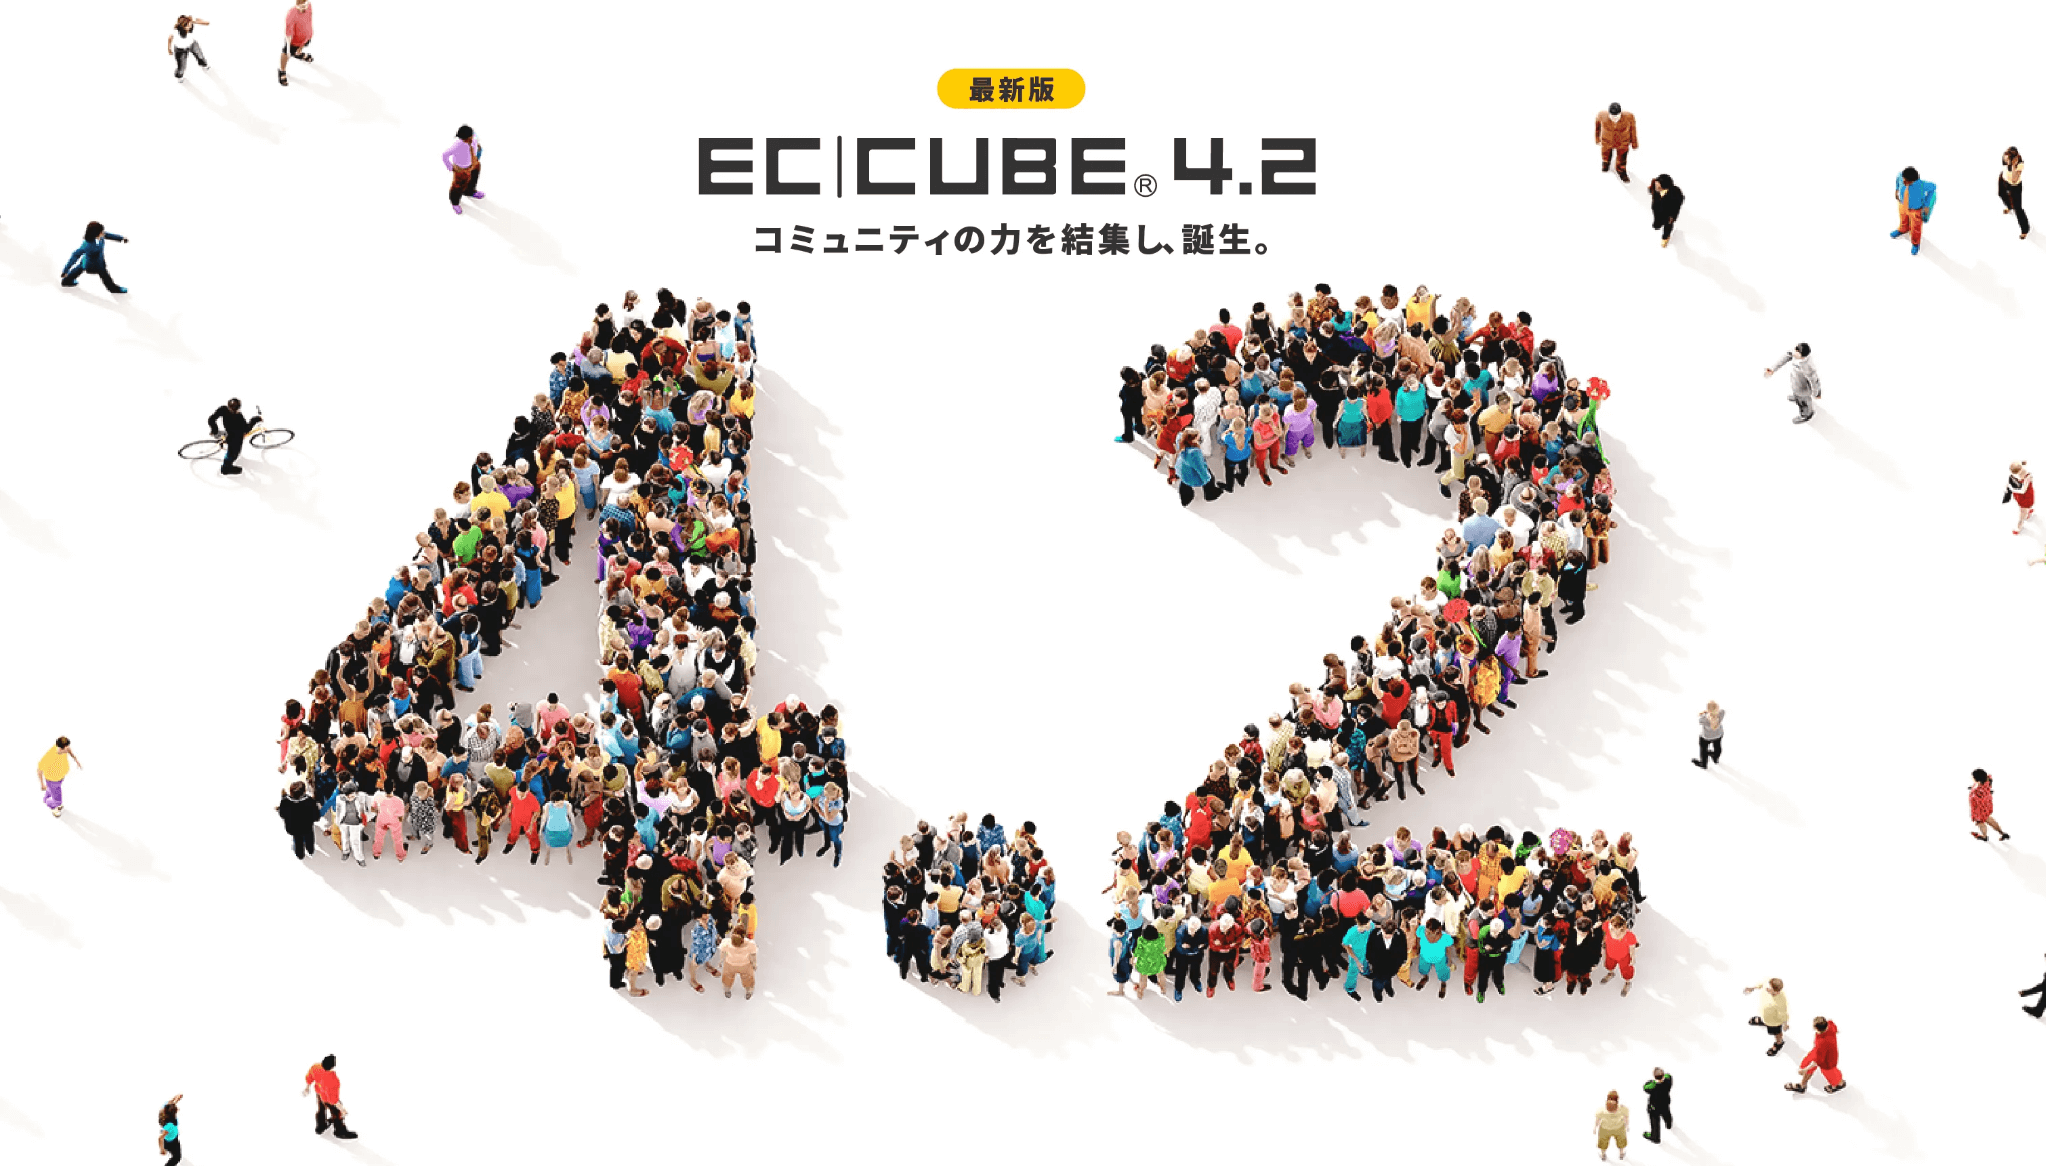 Bootcube2の特徴 セキュリティ強化された最新のEC-CUBE4.2に対応